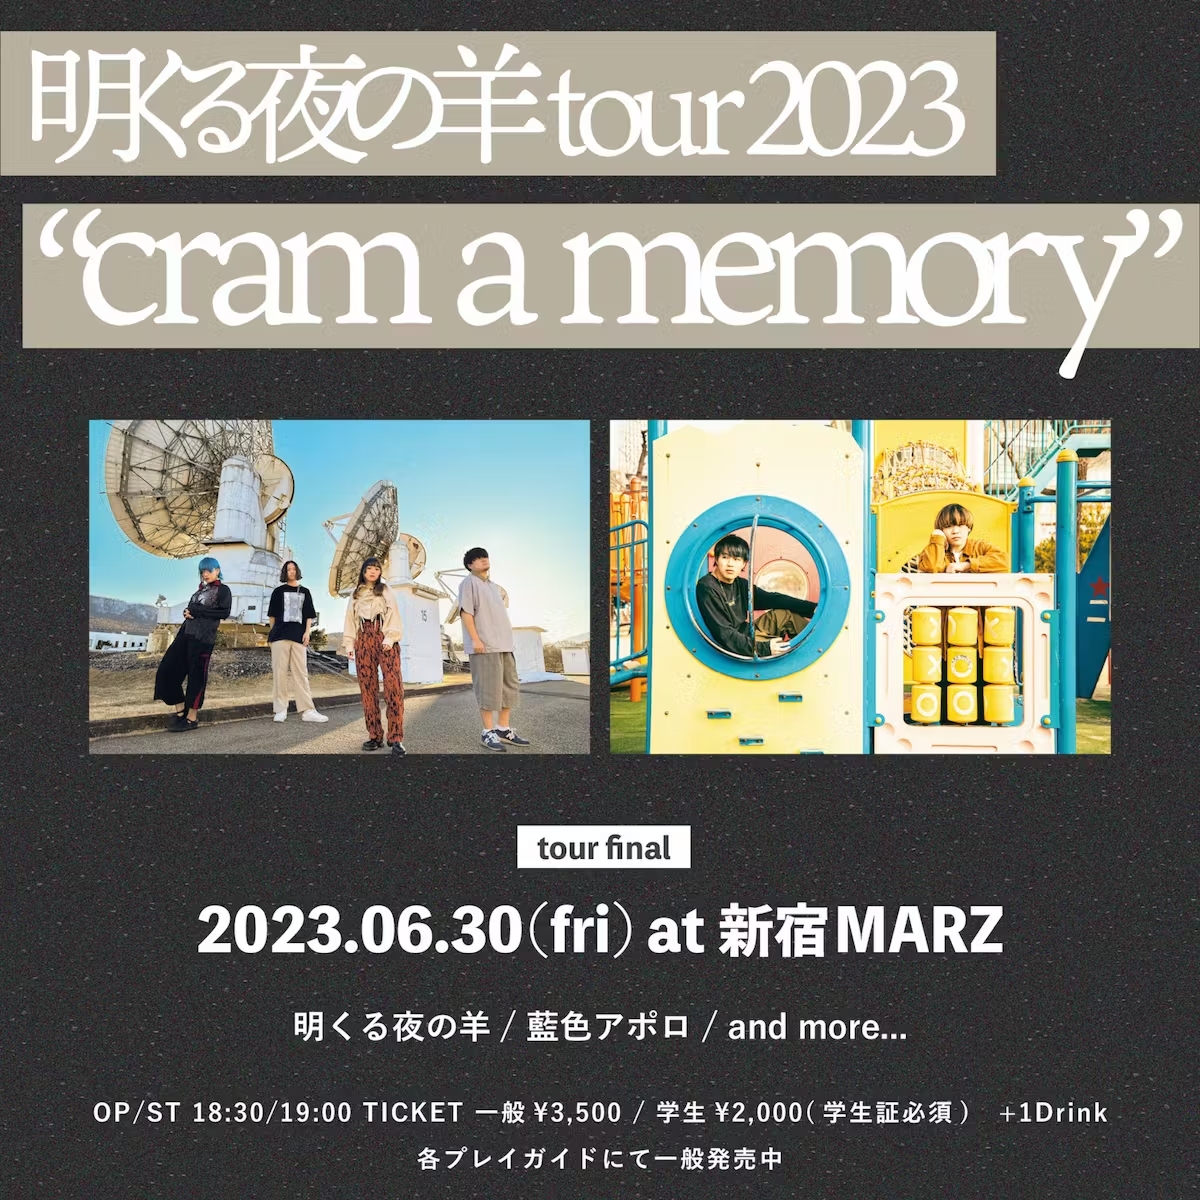 明くる夜の羊tour 2023 "cram a memory" tour final